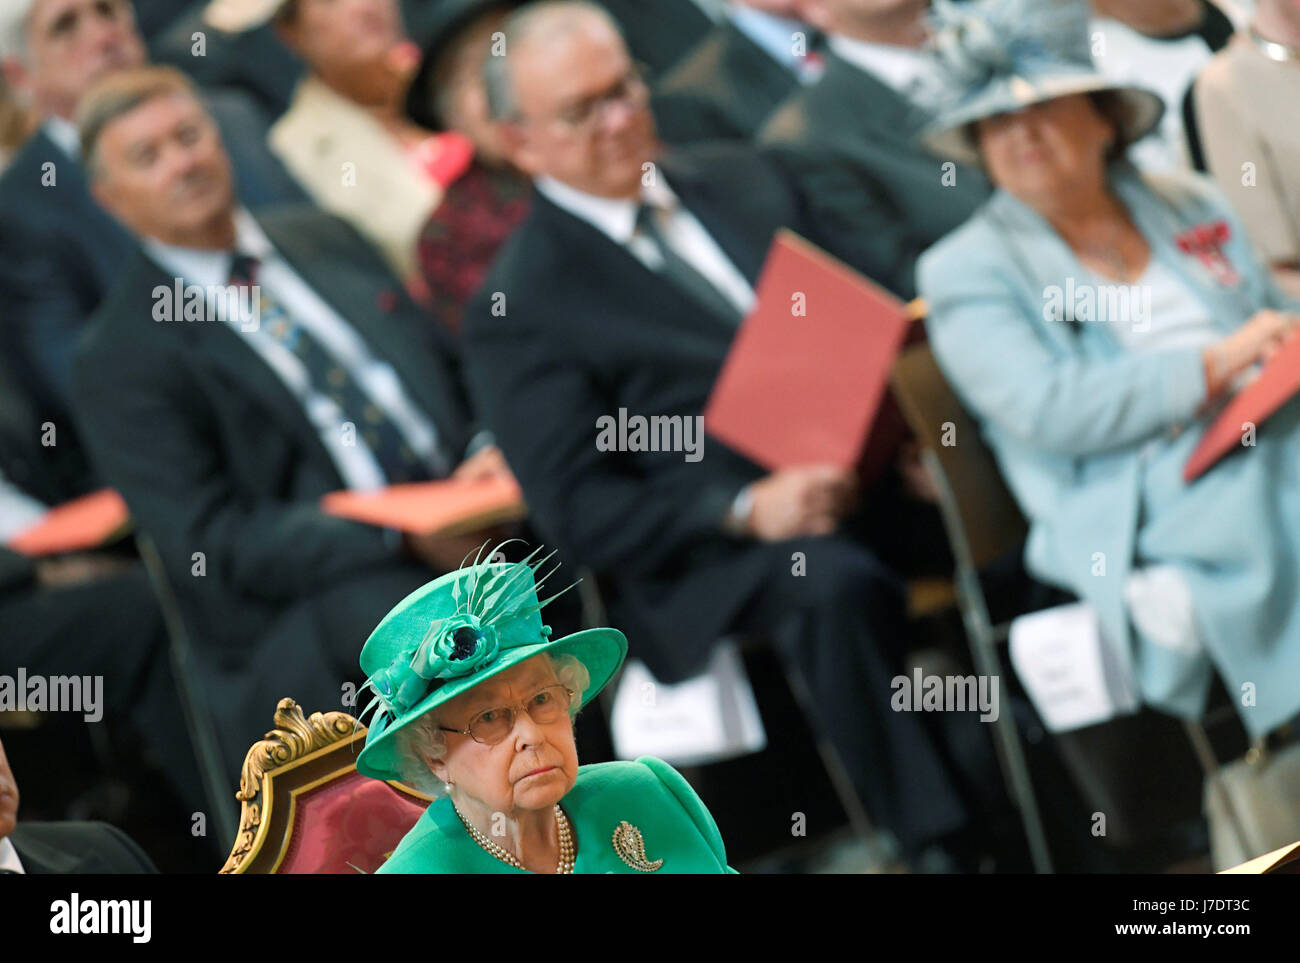 La reine Elizabeth II lors d'un service à la Cathédrale St Paul à Londres pour marquer le centenaire de l'ordre de l'Empire britannique. Banque D'Images